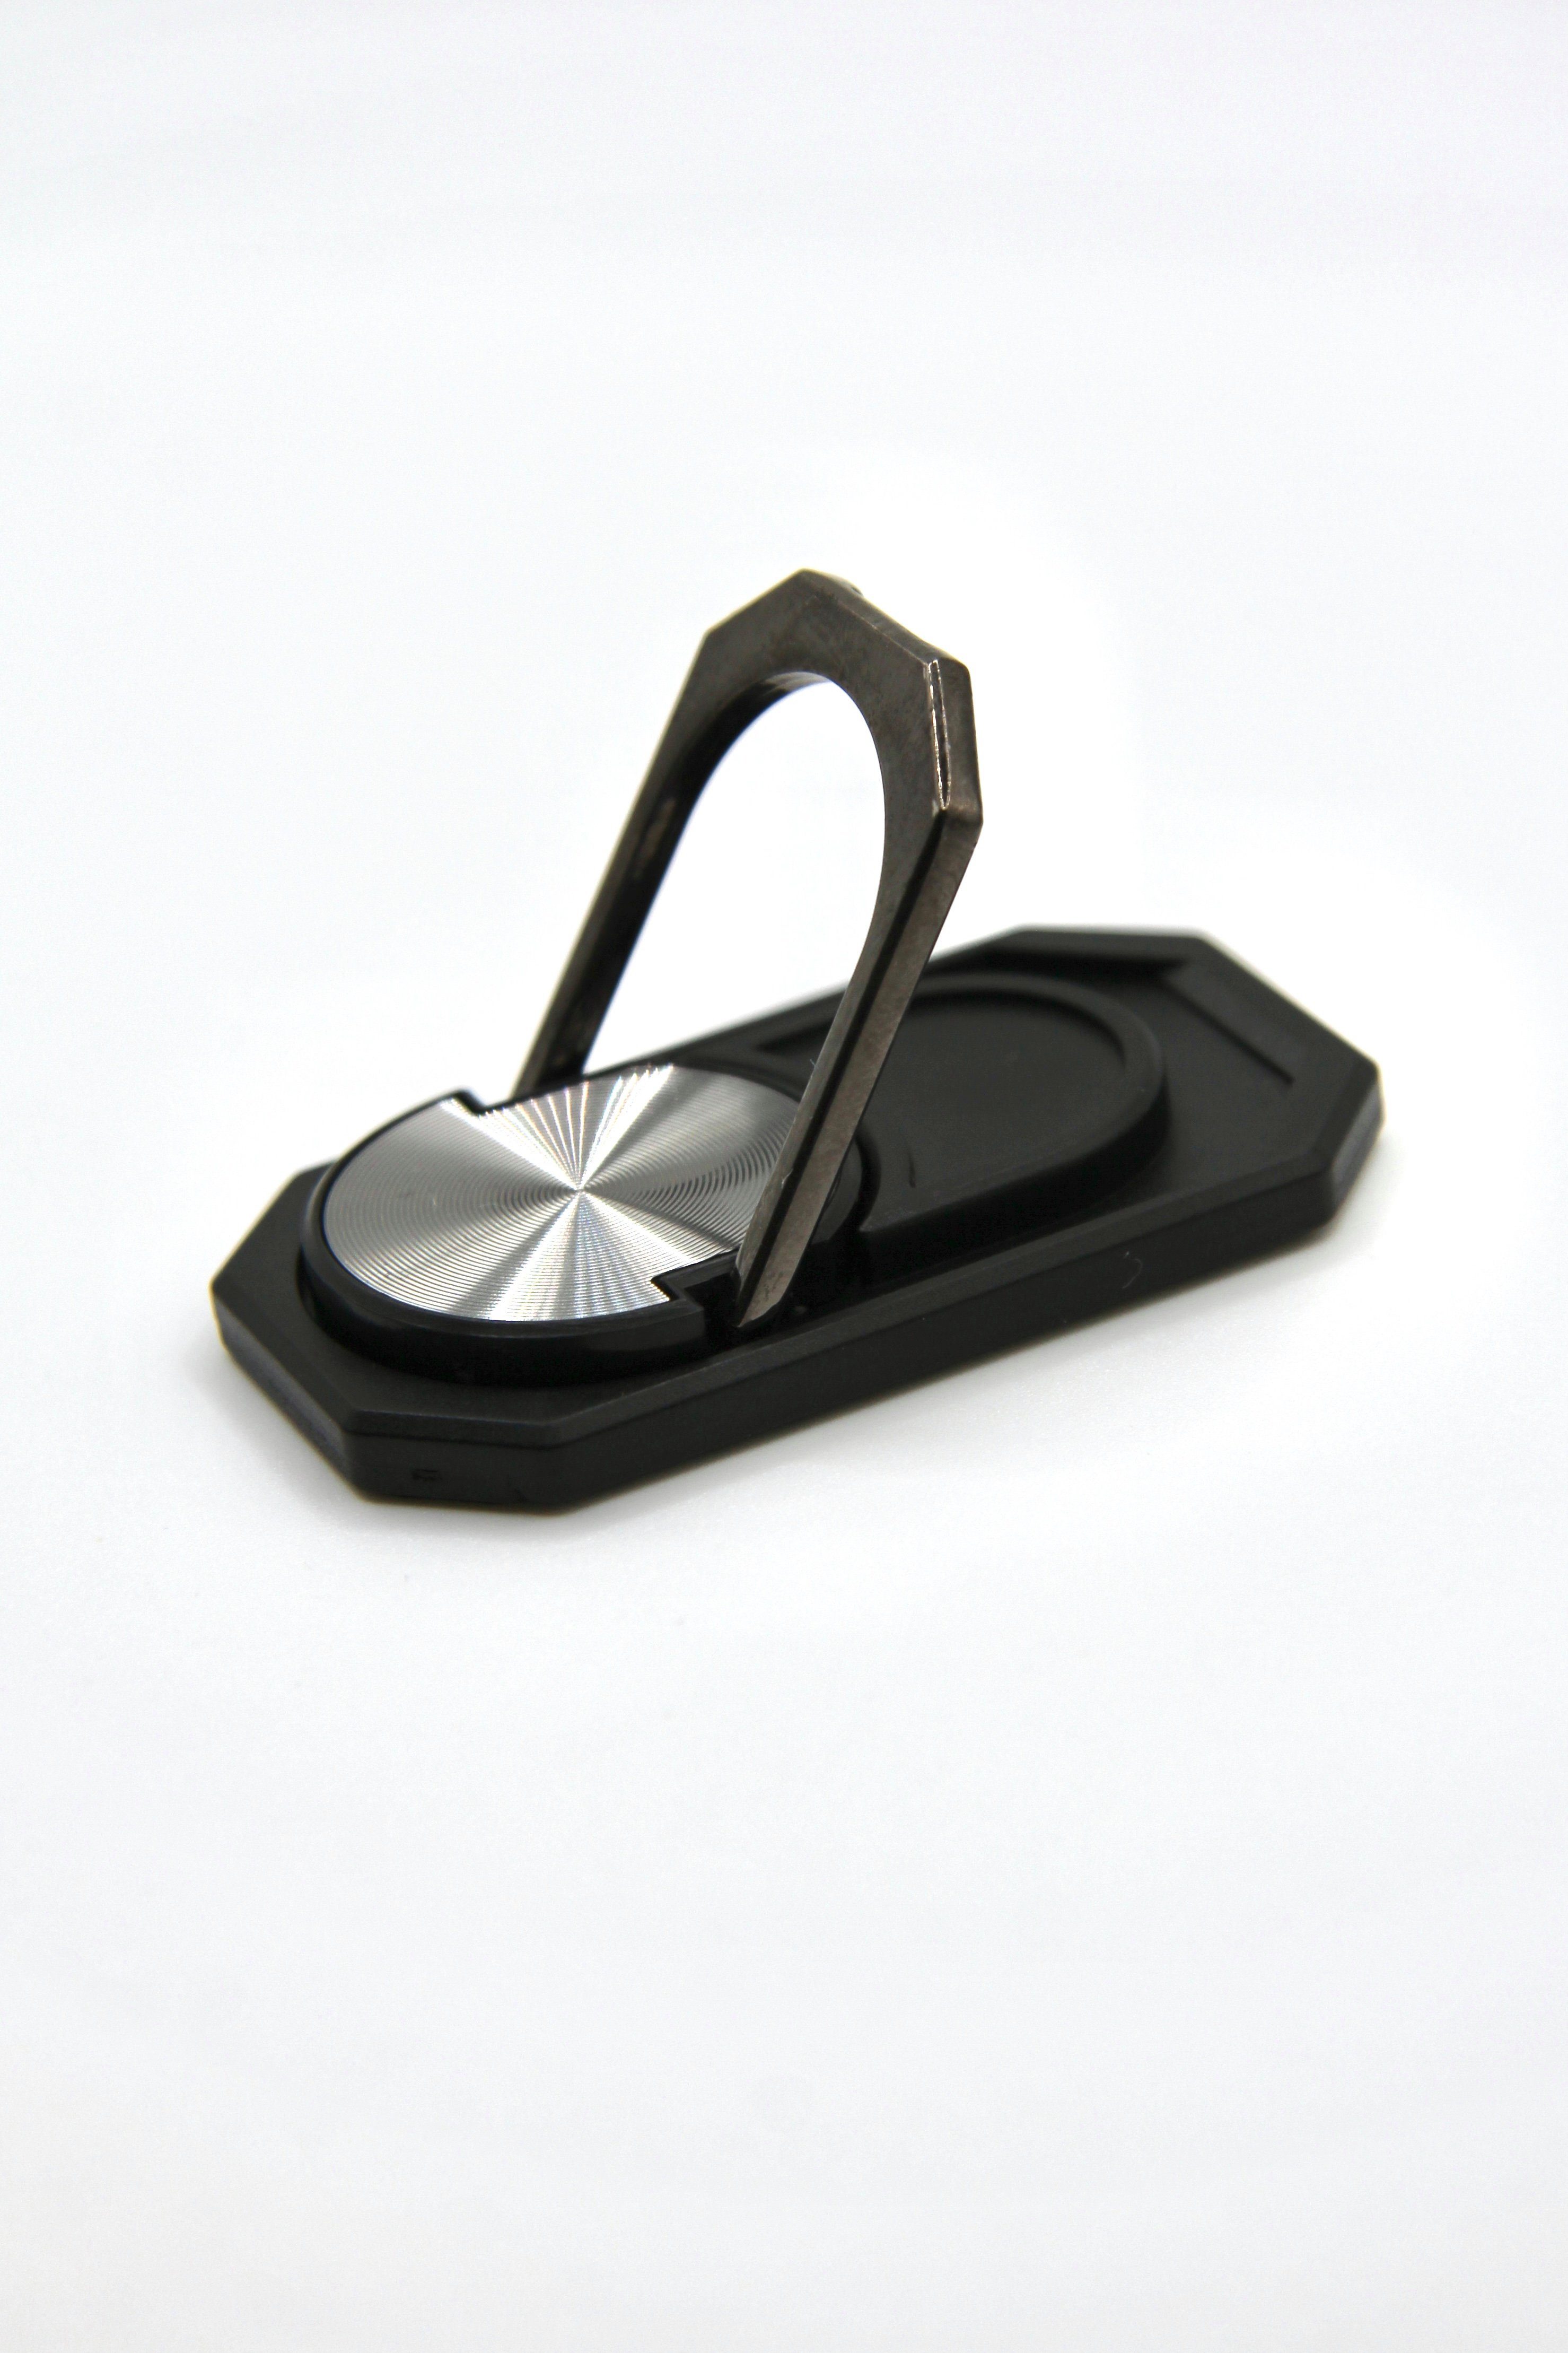 ZUKUNFTSENKEL Handy Ring Fingerhalter Smartphone-Halterung, (Magnetisch, 360°  Drehbar, Auch als Ständer zu nutzen)